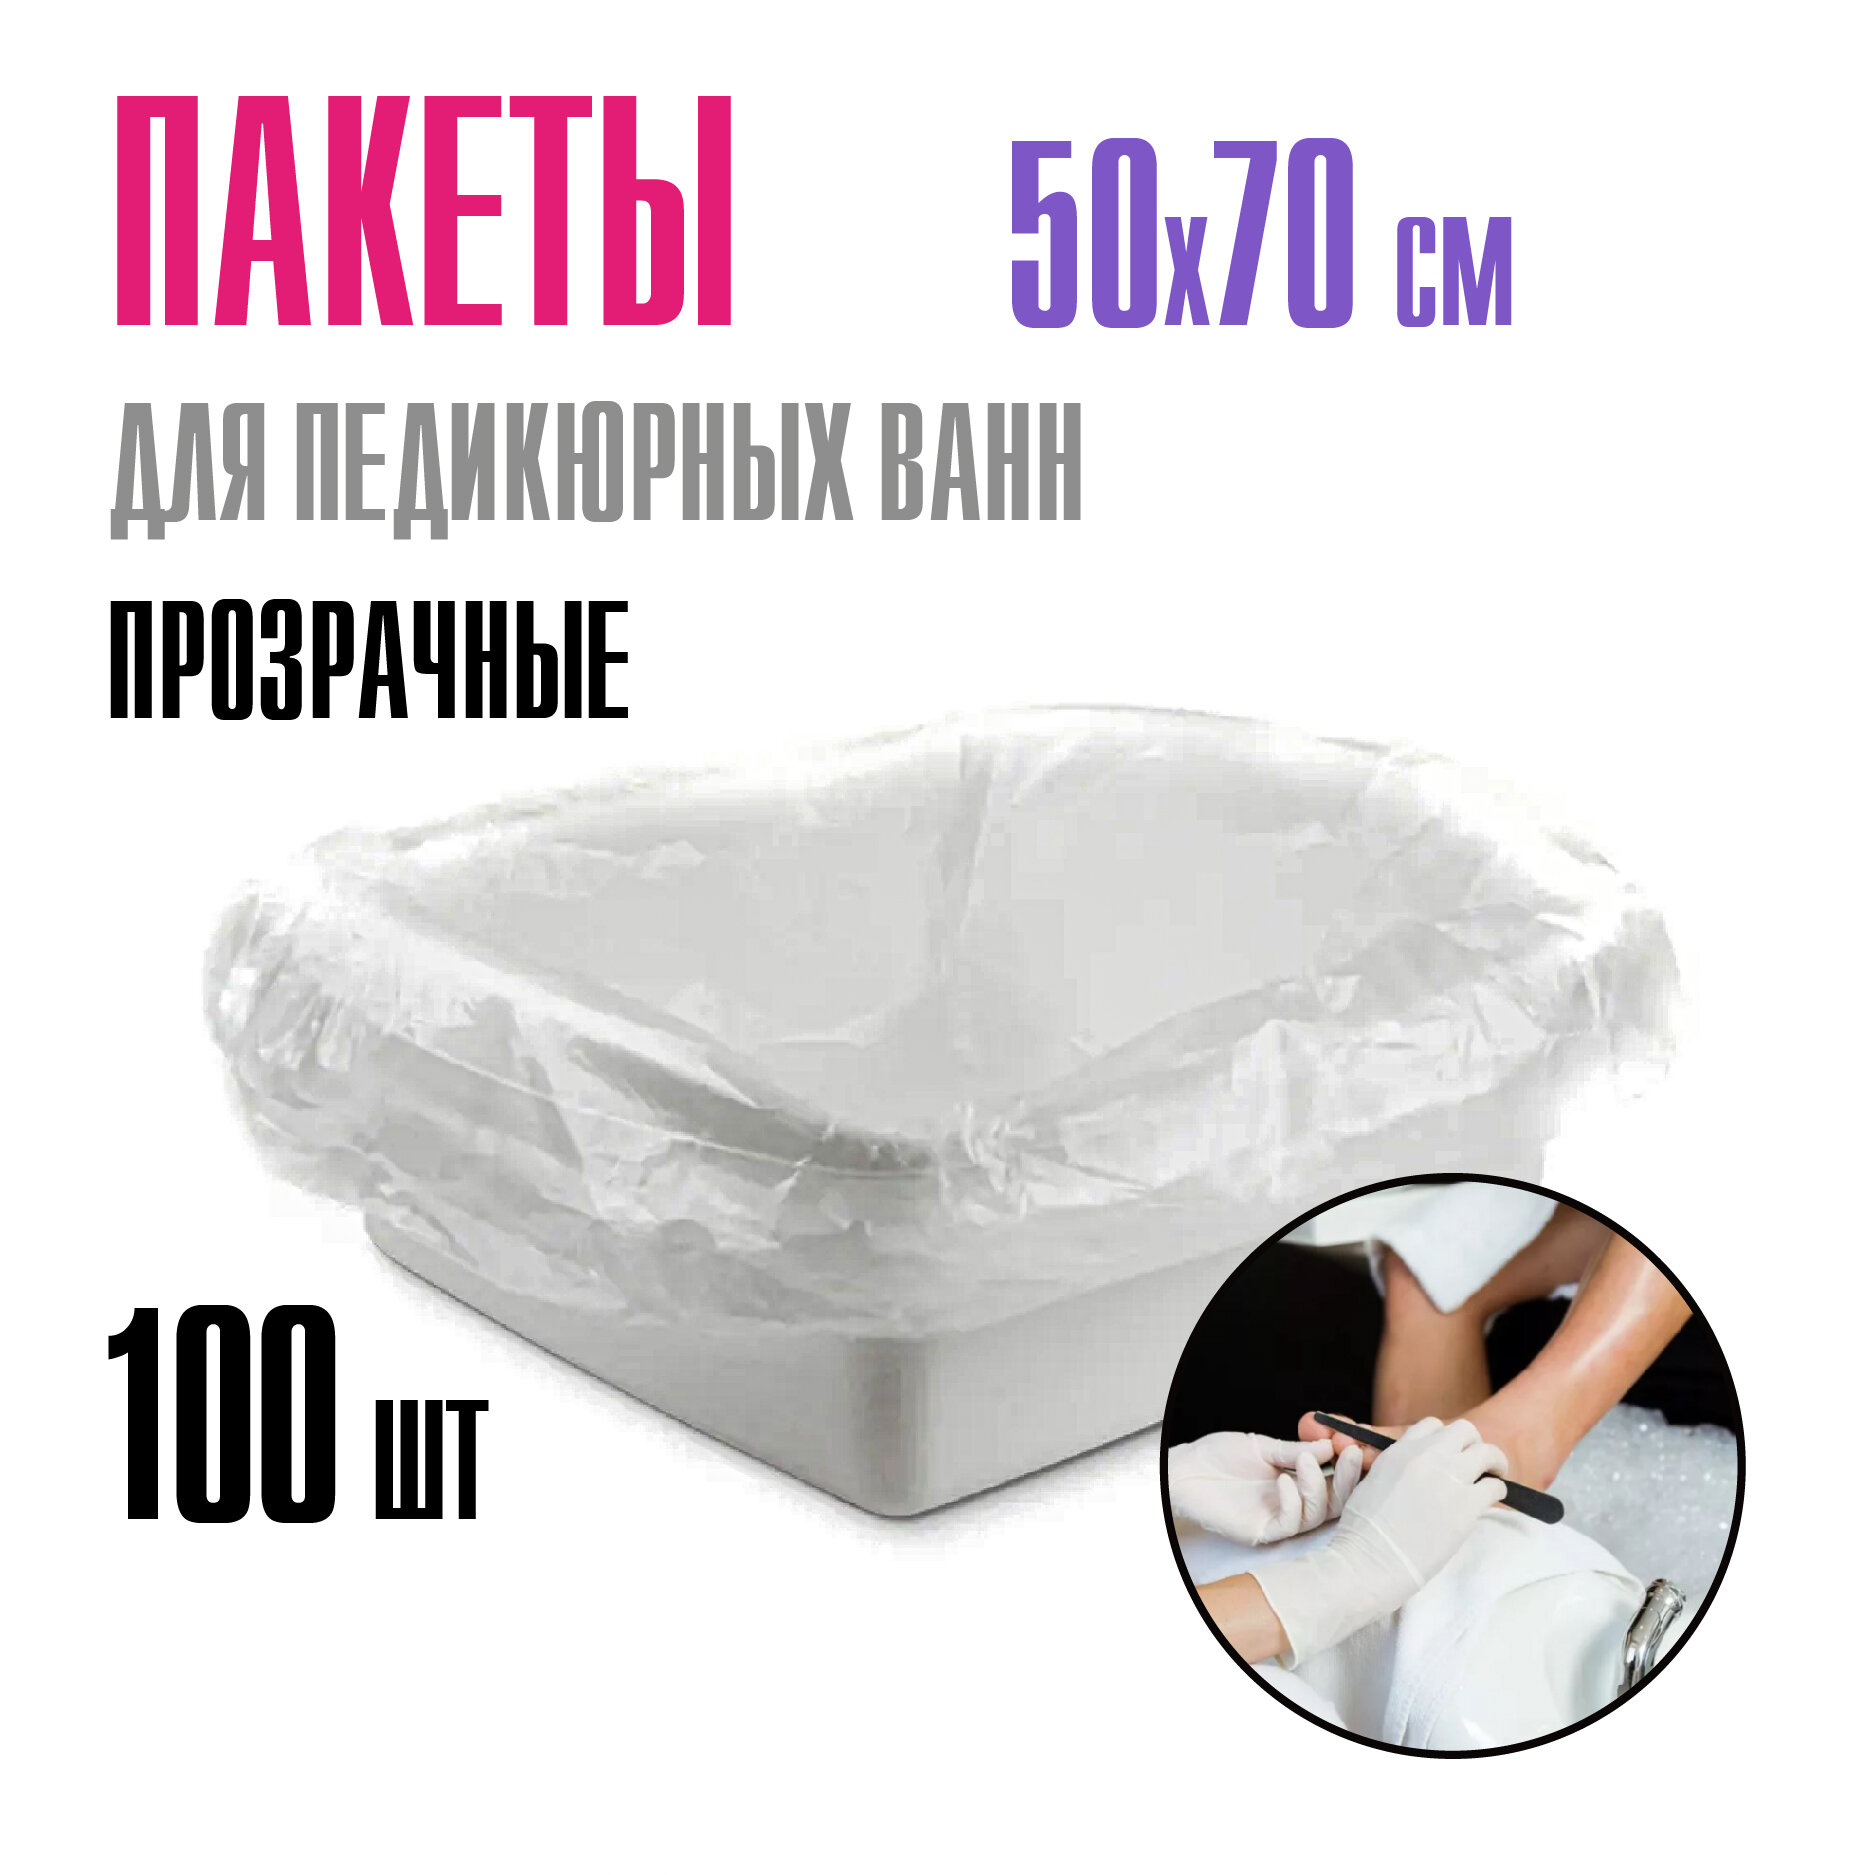 Пакеты для педикюрных ванн полиэтиленовые MIART, 50х70 см, прозрачные, набор 100 шт